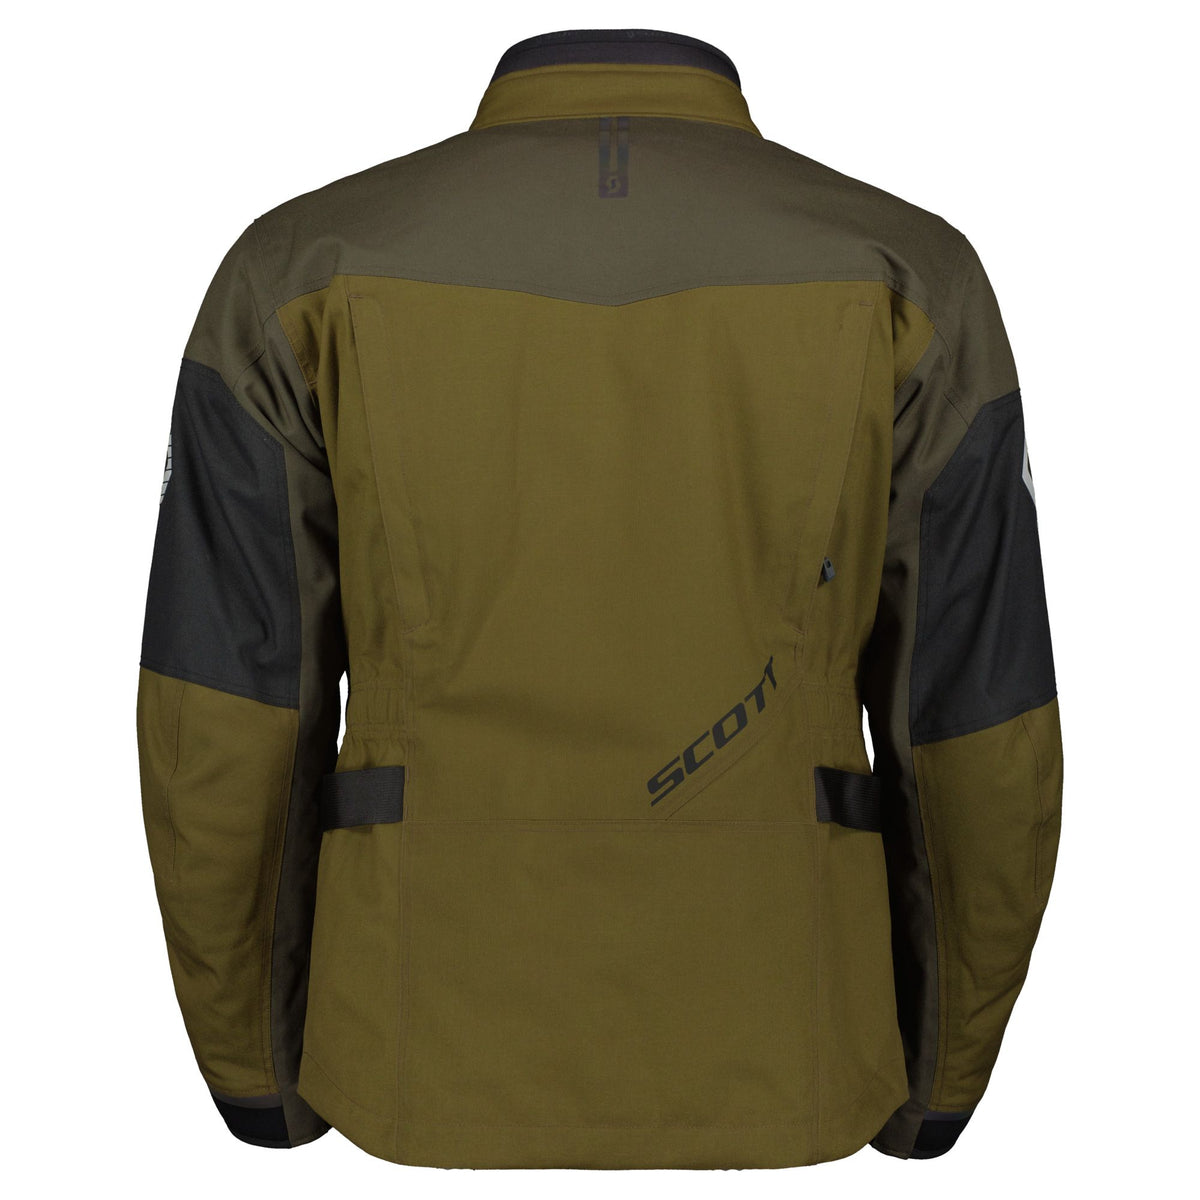 Scott Voyager Dryo Jacket